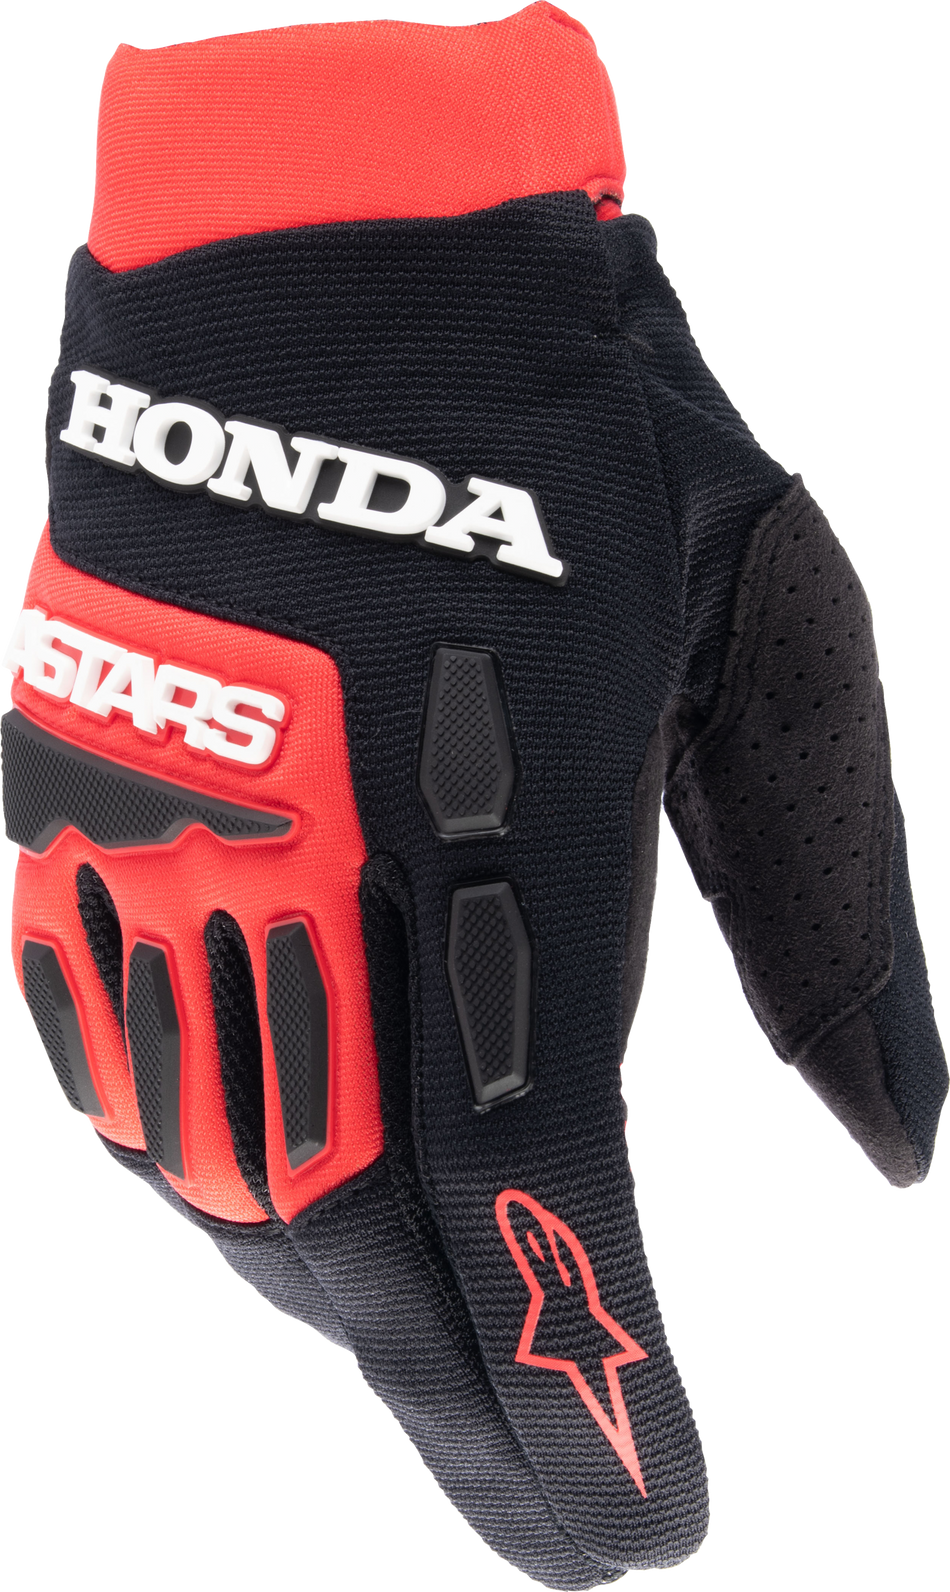 ALPINESTARS Honda Full Bore Gloves Bright Red/Black Md 3563823-3031-M